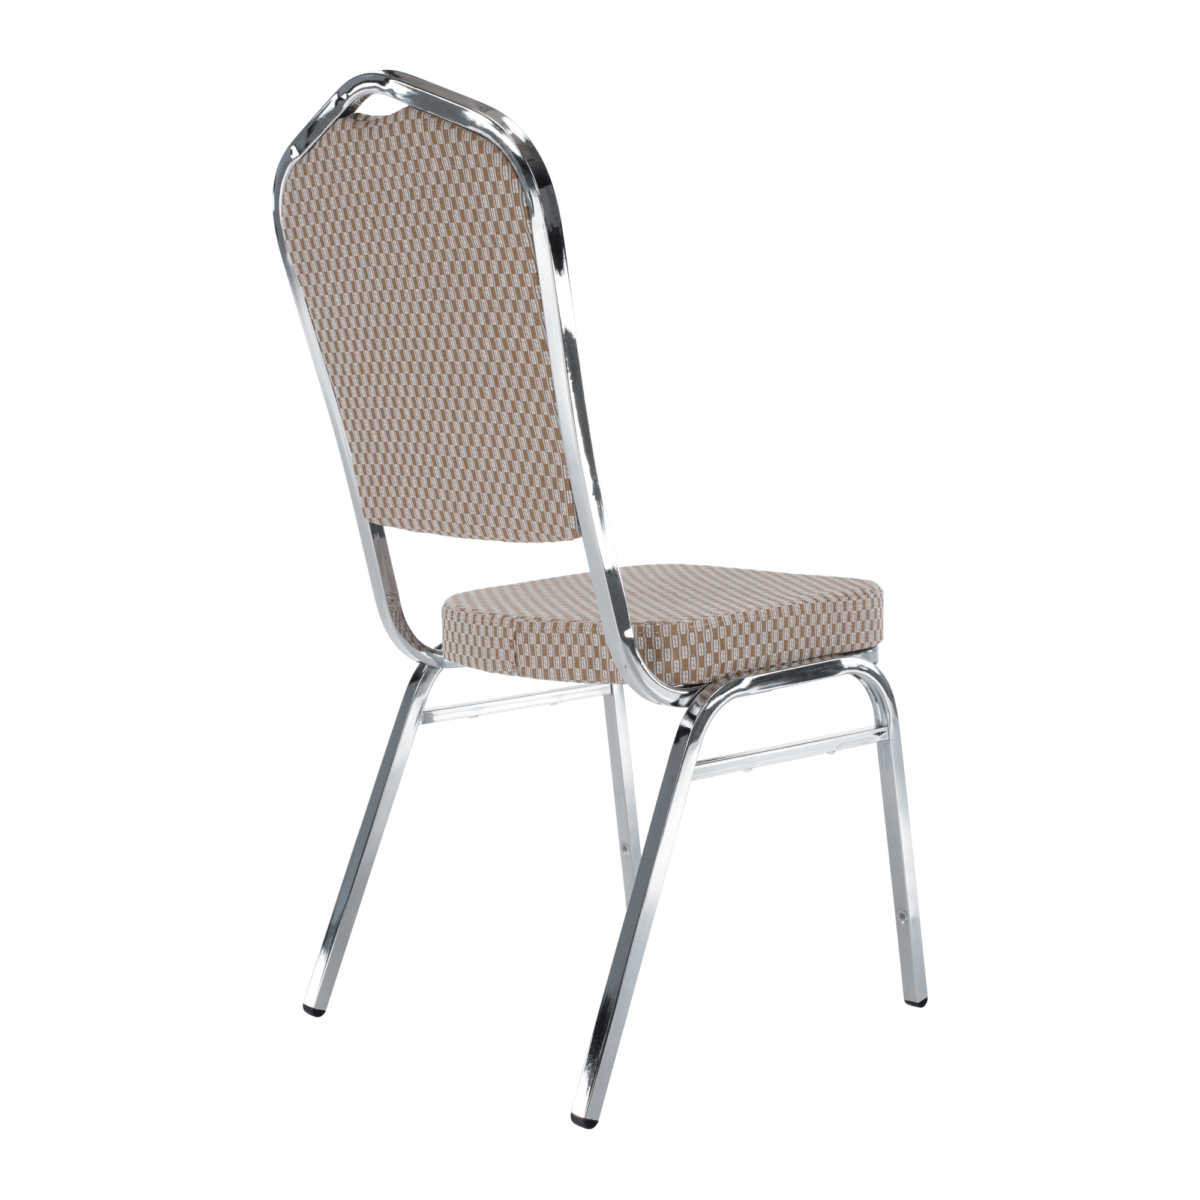 Rákásolható szék, bézs/minta/króm, ZINA 3 NEW